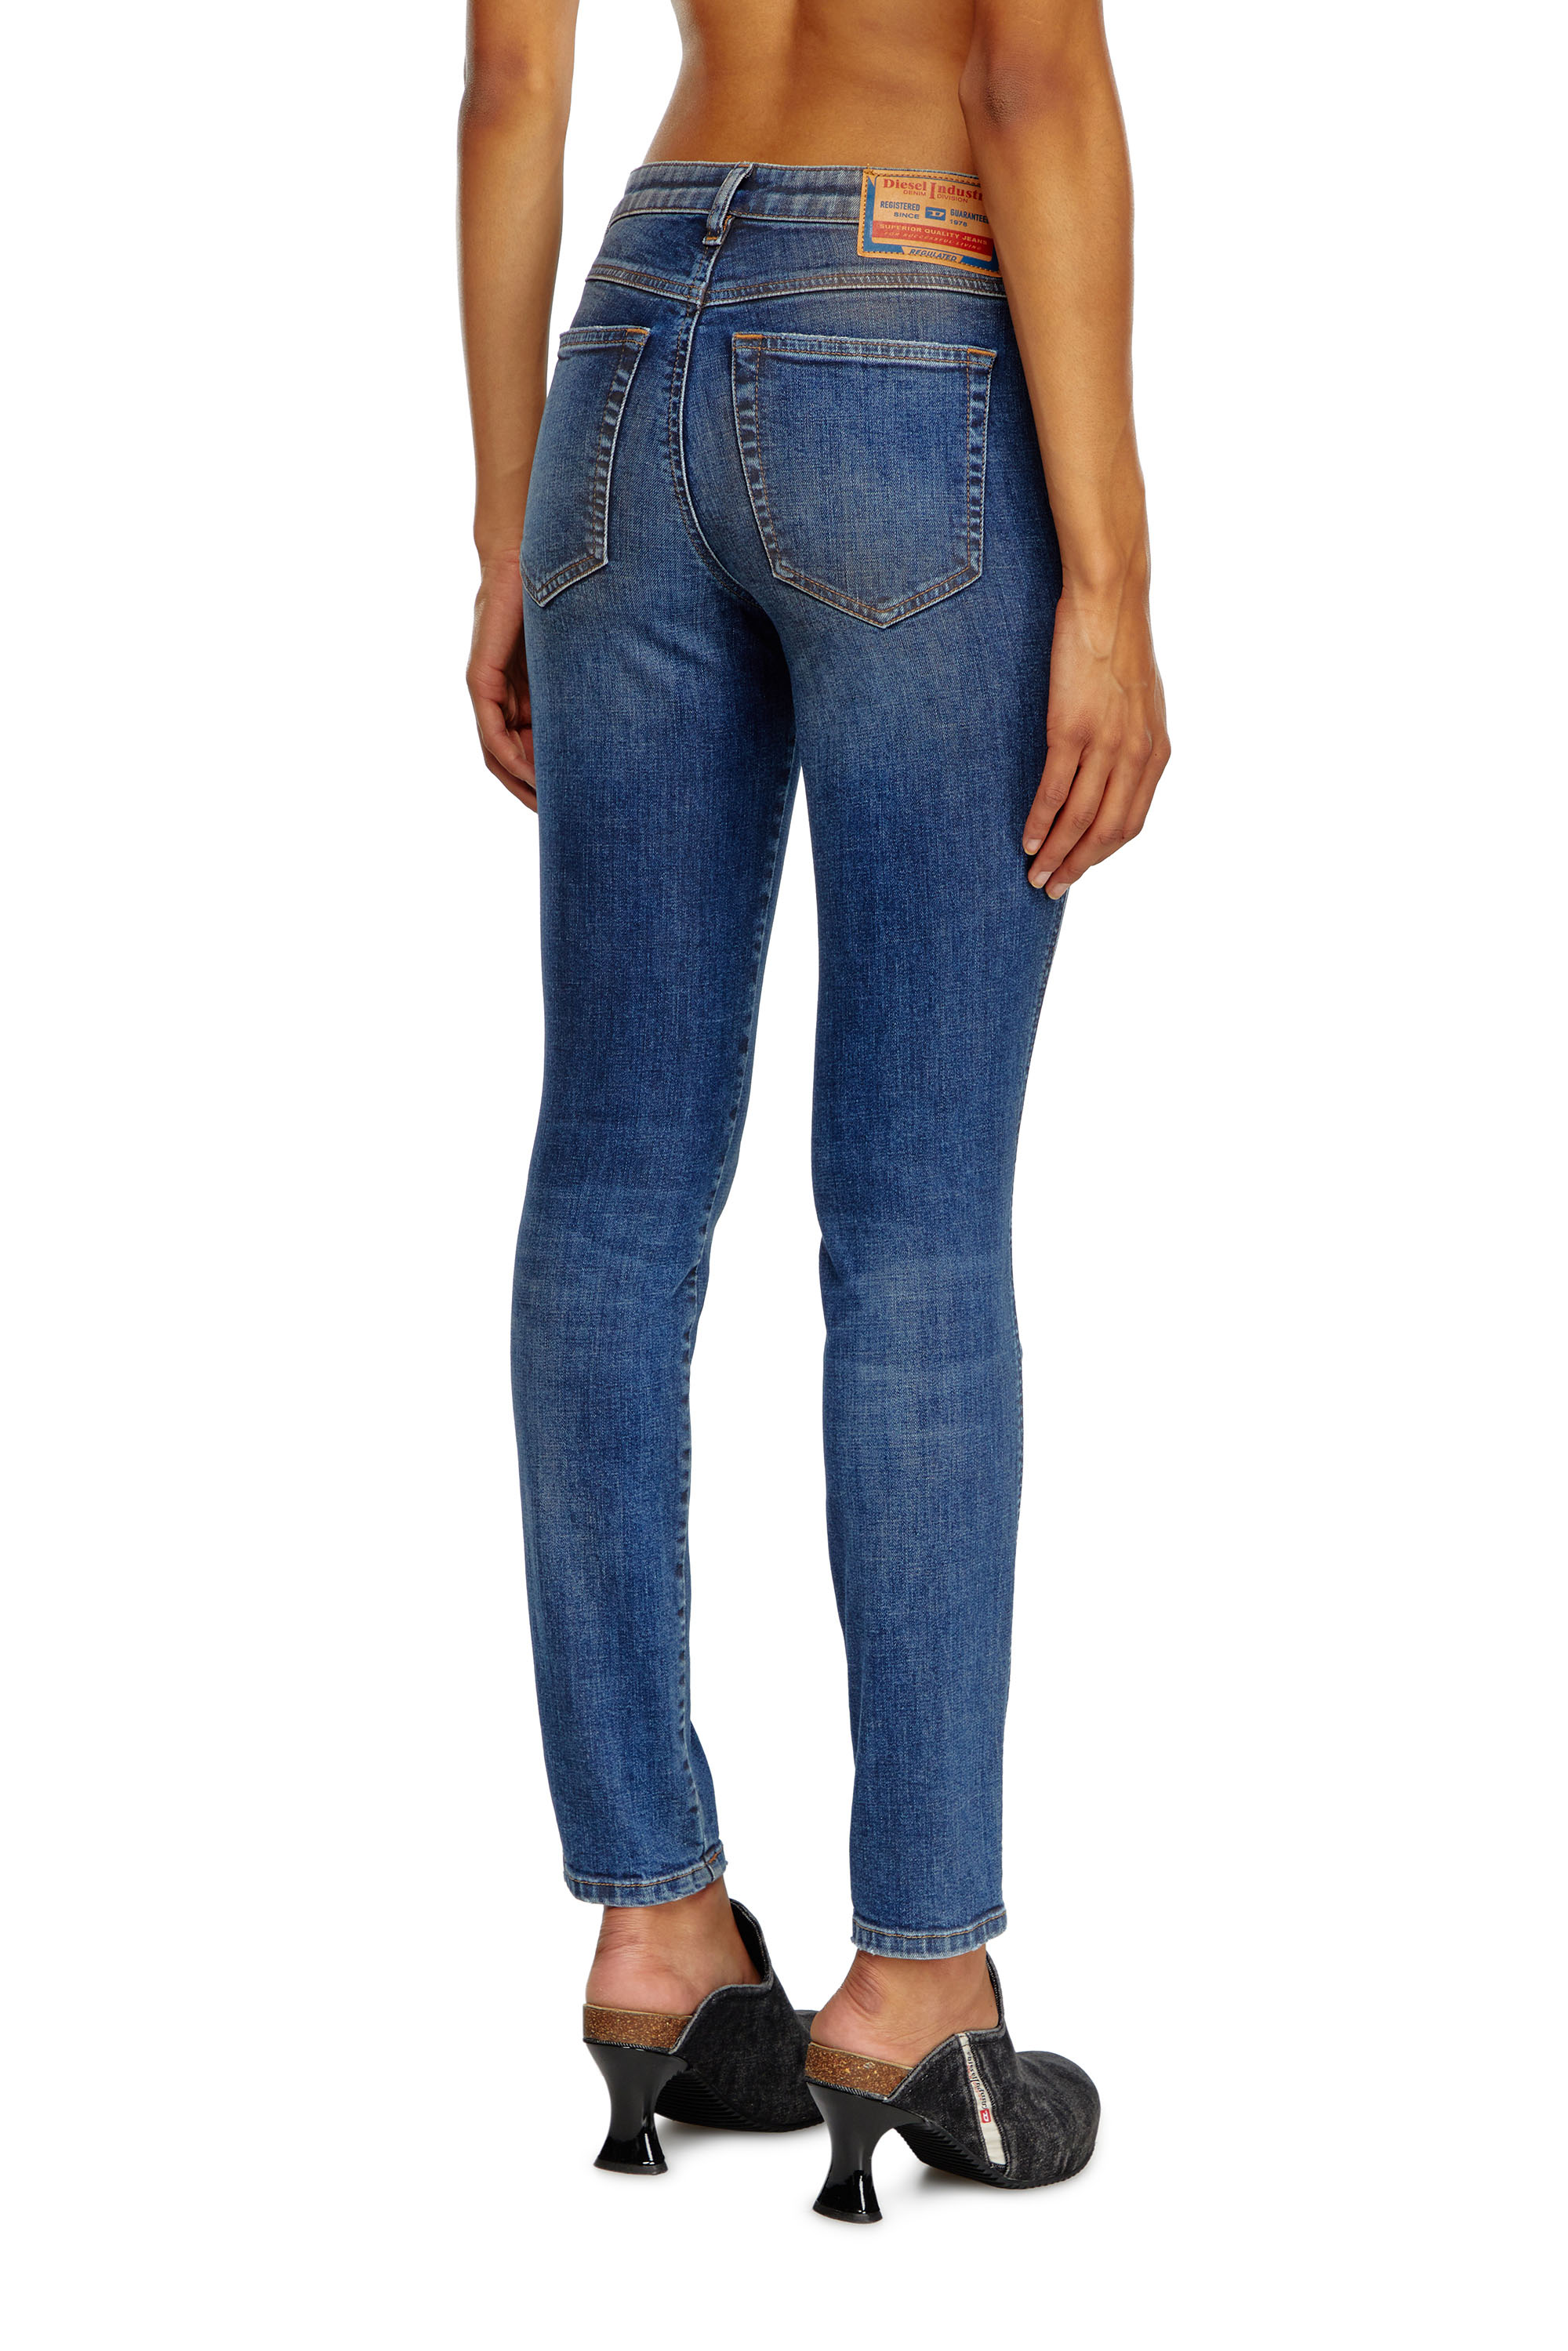 Diesel - Skinny Jeans 2015 Babhila 09J32, Mujer Skinny Jeans - 2015 Babhila in Azul marino - Image 3